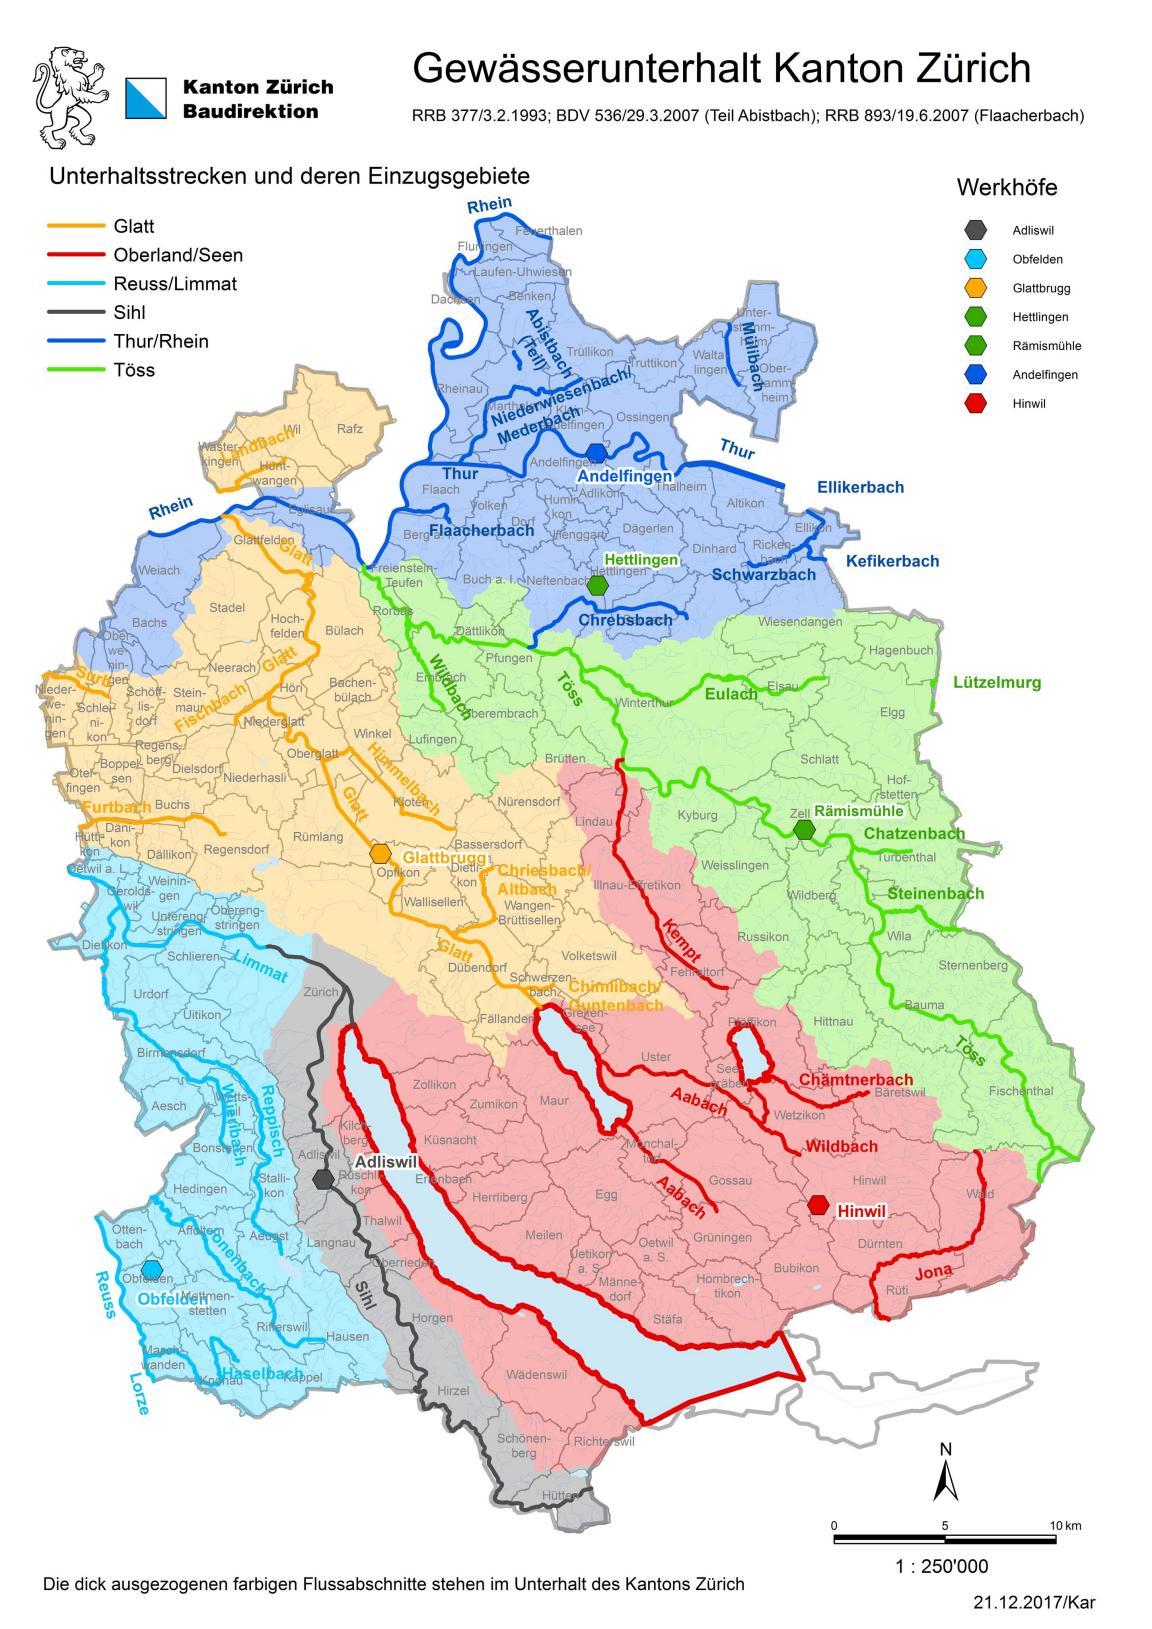 Die Karte zeigt die Gebietseinteilung des Gewässerunterhalts